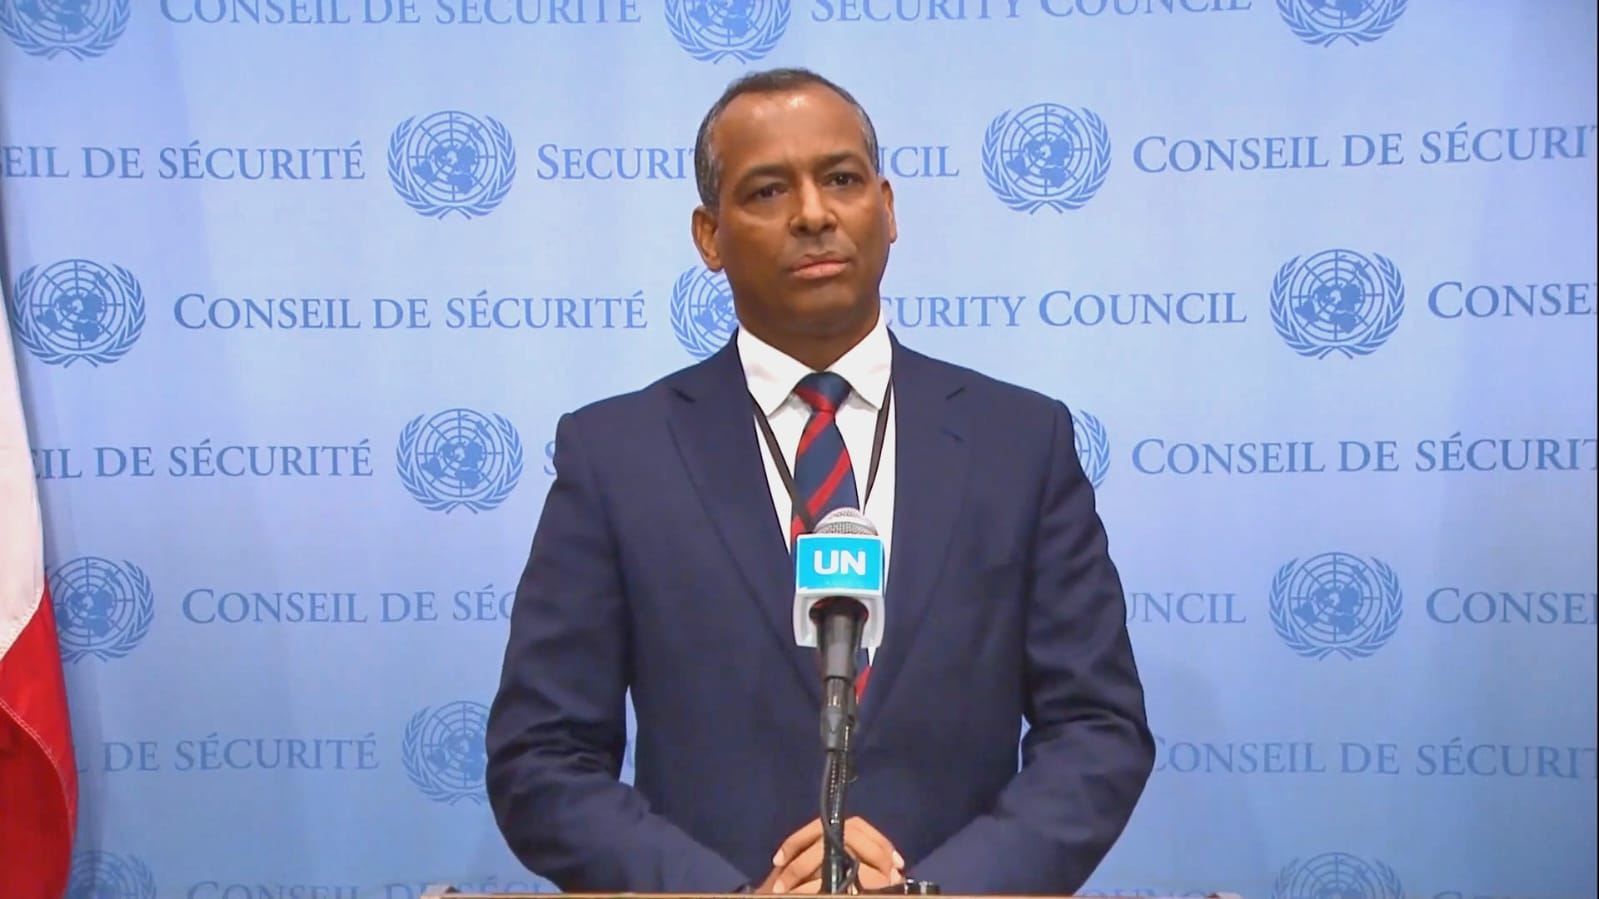 الدكتور سيدي محمد عمار: ما نطلبه هو انخراط مجلس الأمن الجدي في العمل من أجل استئناف عملية السلام والدفع بها نحو استكمال إنهاء الاستعمار في الصحراء الغربية